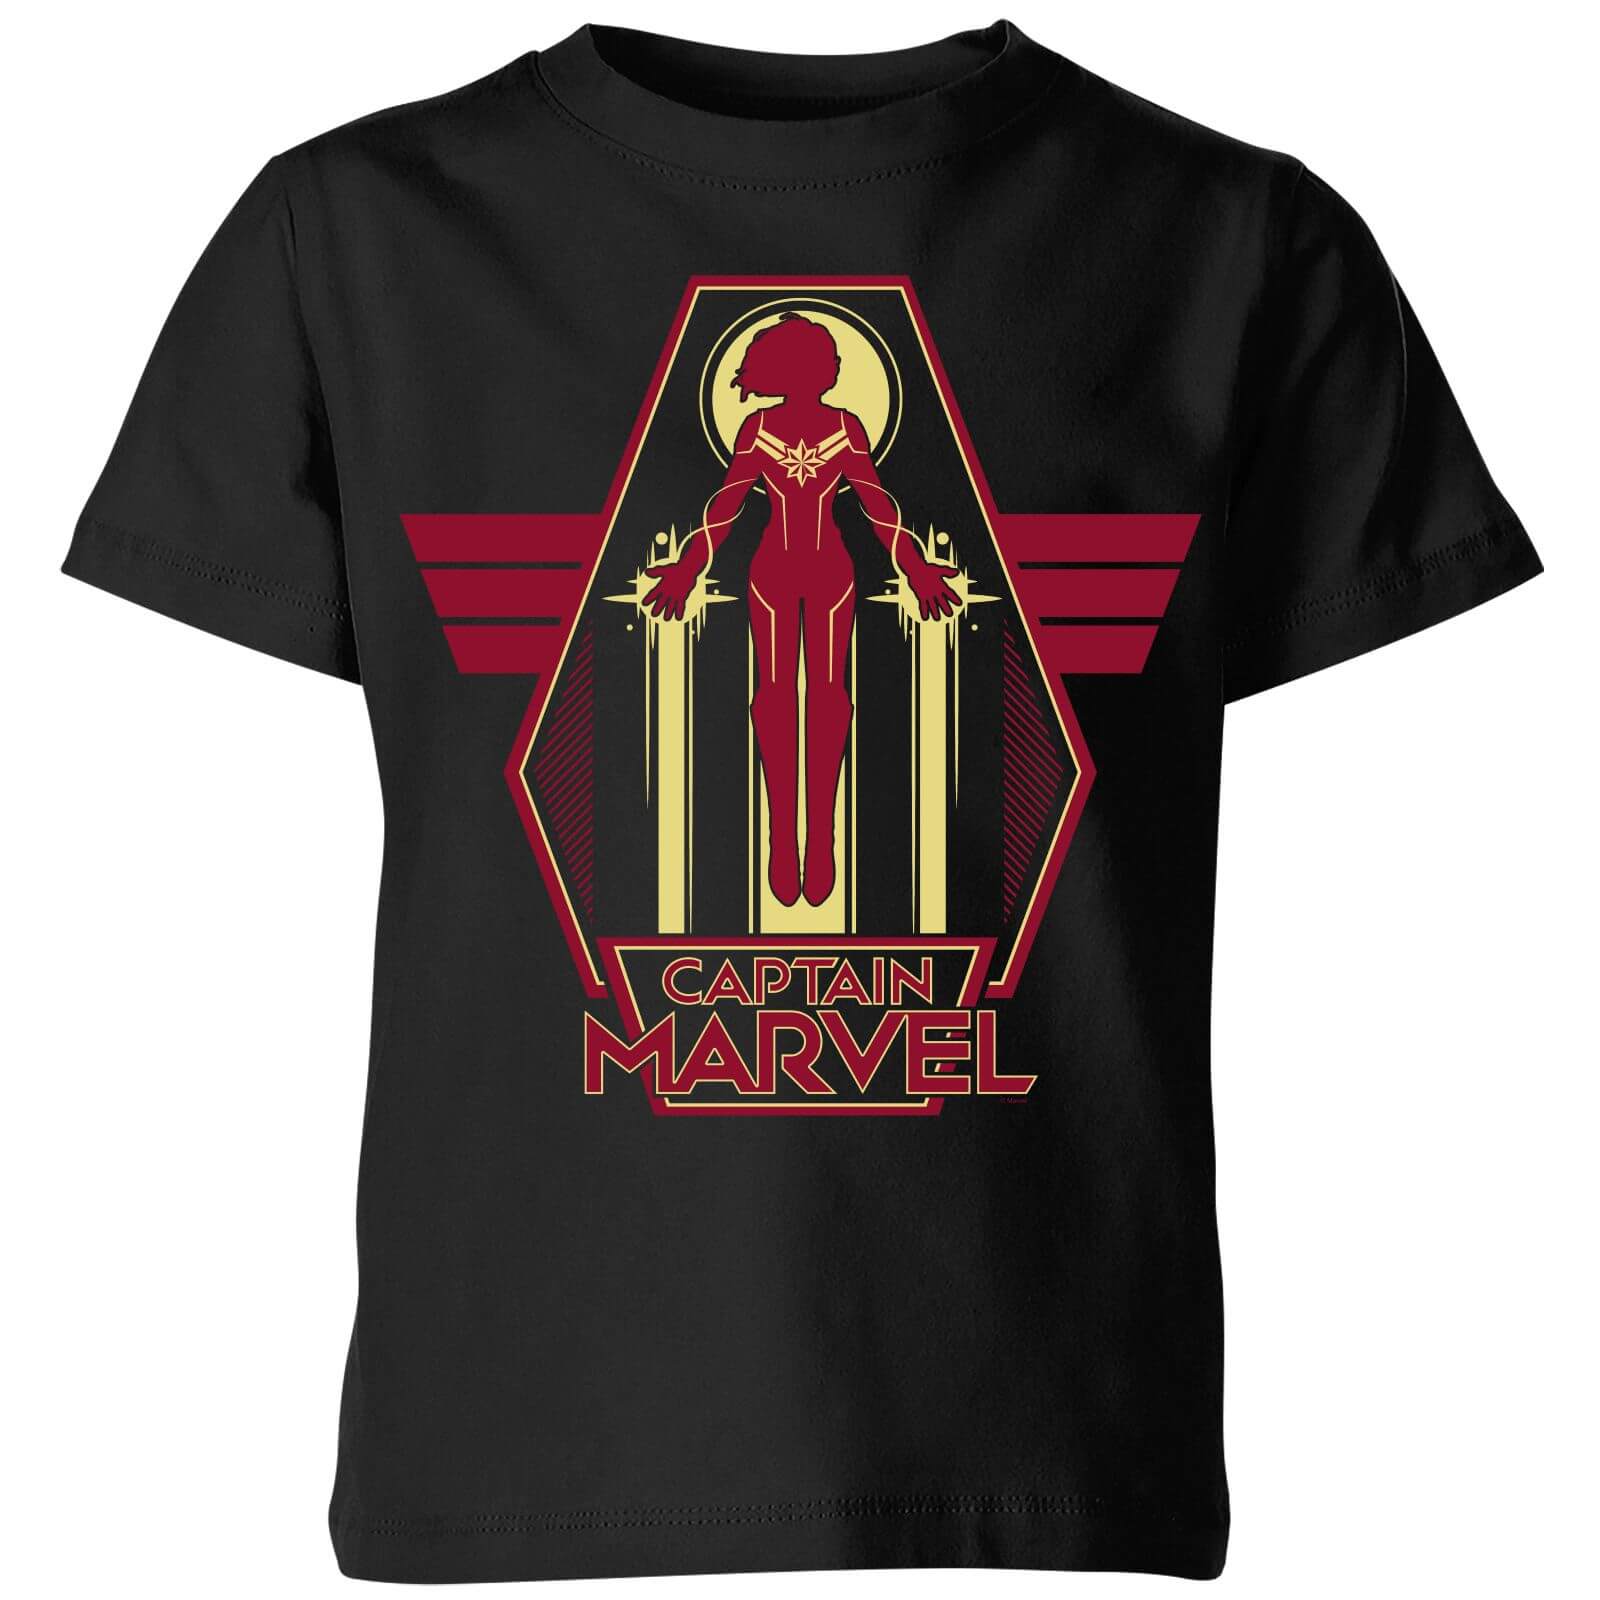 Captain Marvel Flying Warrior Kids' T-Shirt - Black - 11-12 Years - Black